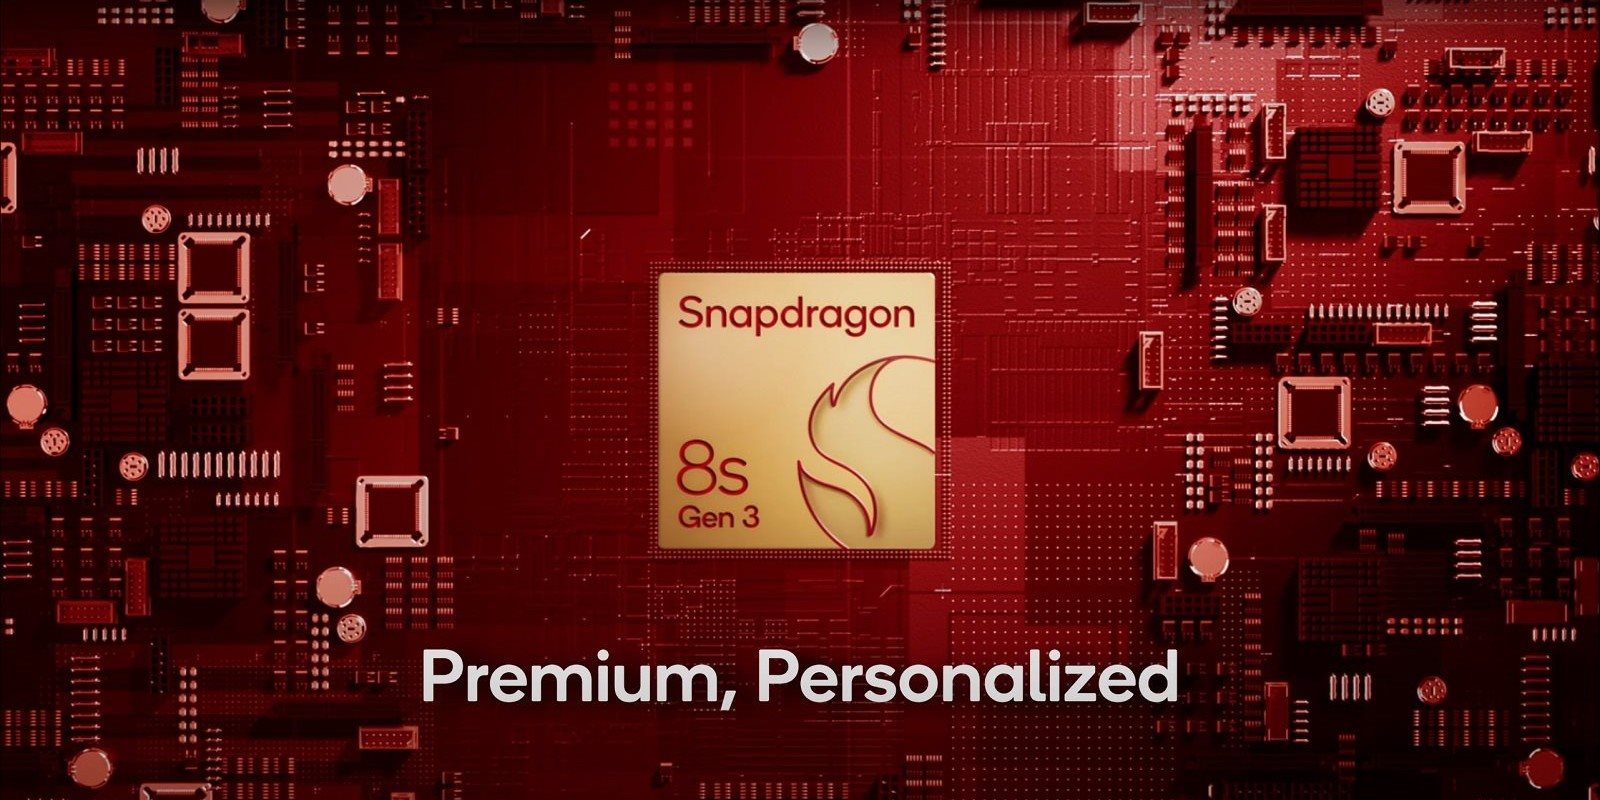 Qualcomm Snapdragon 8s Gen 3, predstavenie